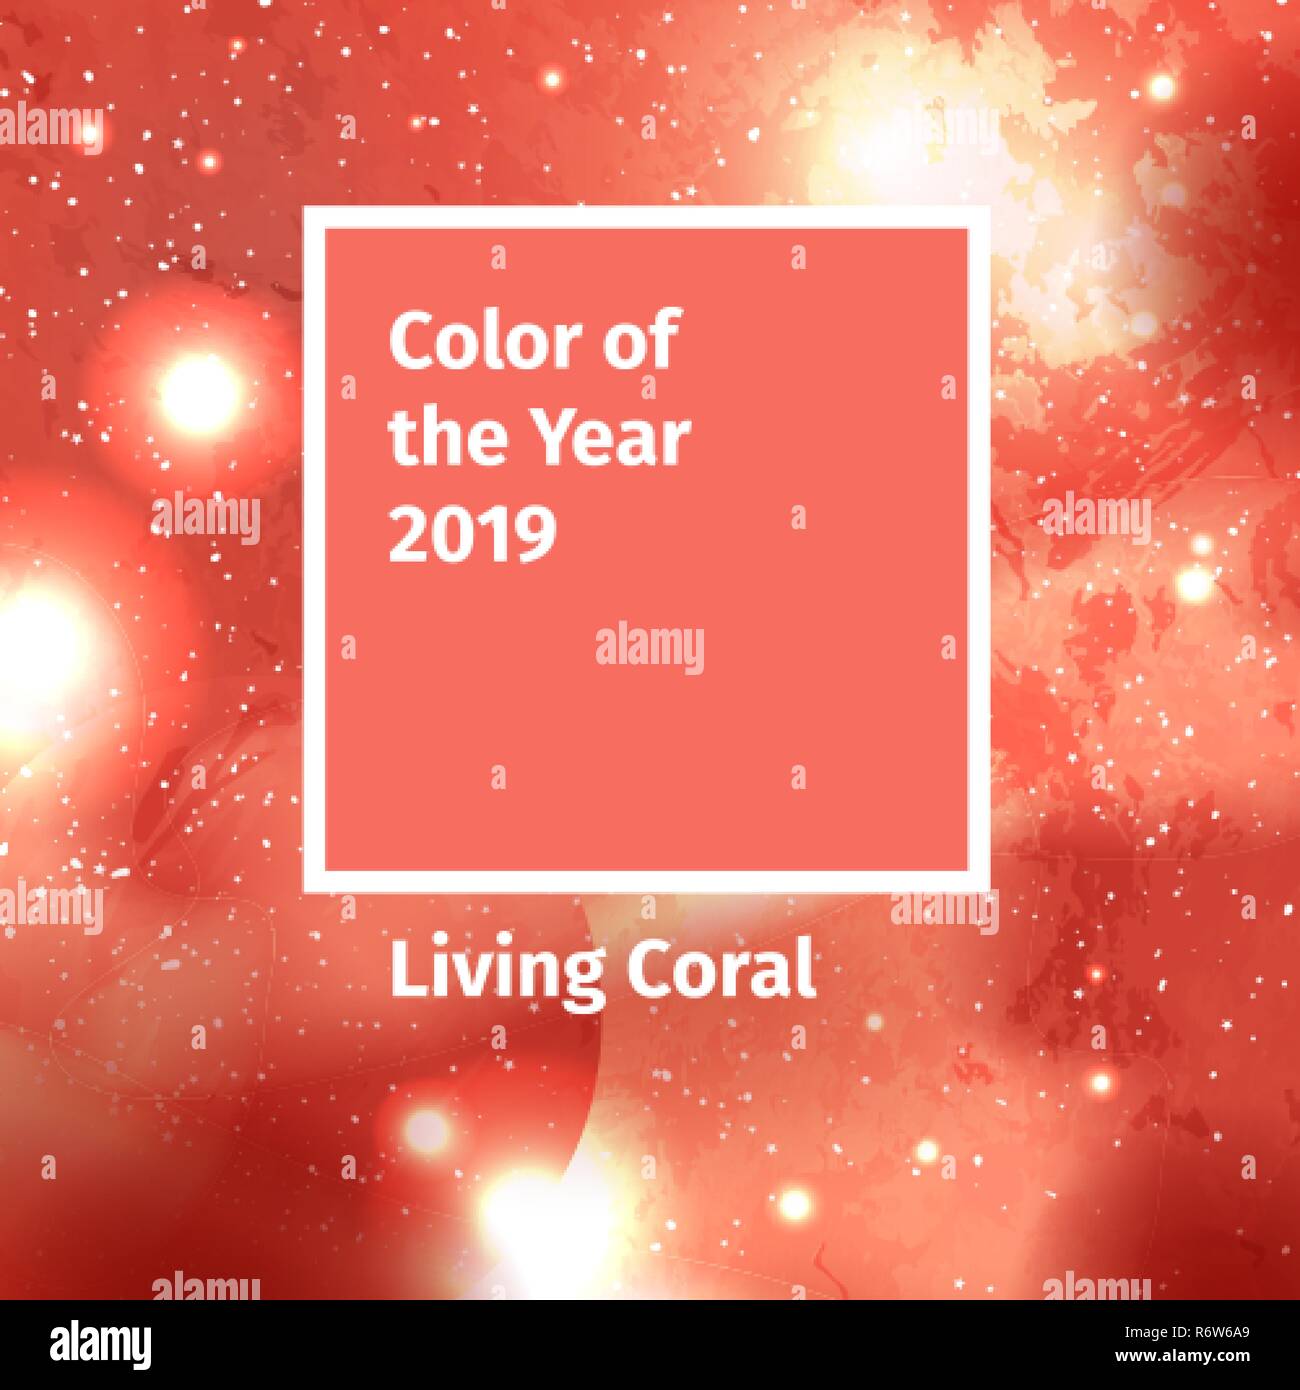 Il colore dell'anno 2019. Colore tavolozza di tendenza. Swatch coralli viventi colore di sfondo con spazio di Galaxy, cosmo stellato. Illustrazione Vettoriale con sistema solare Illustrazione Vettoriale